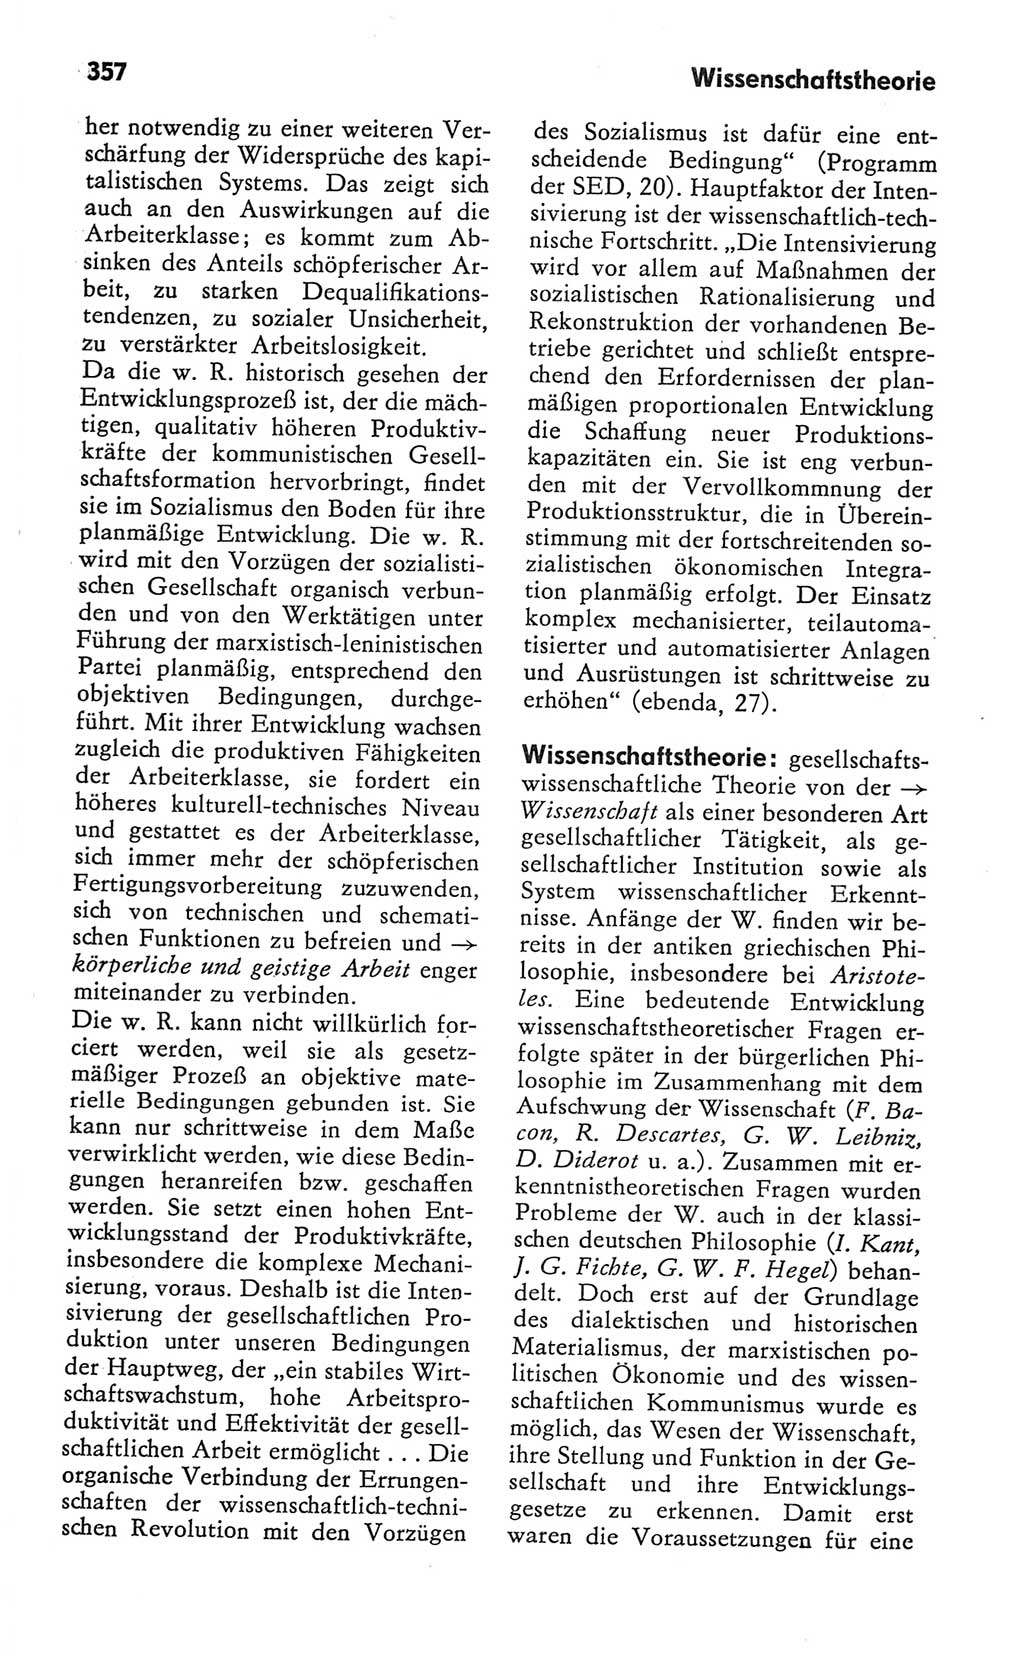 Kleines Wörterbuch der marxistisch-leninistischen Philosophie [Deutsche Demokratische Republik (DDR)] 1982, Seite 357 (Kl. Wb. ML Phil. DDR 1982, S. 357)